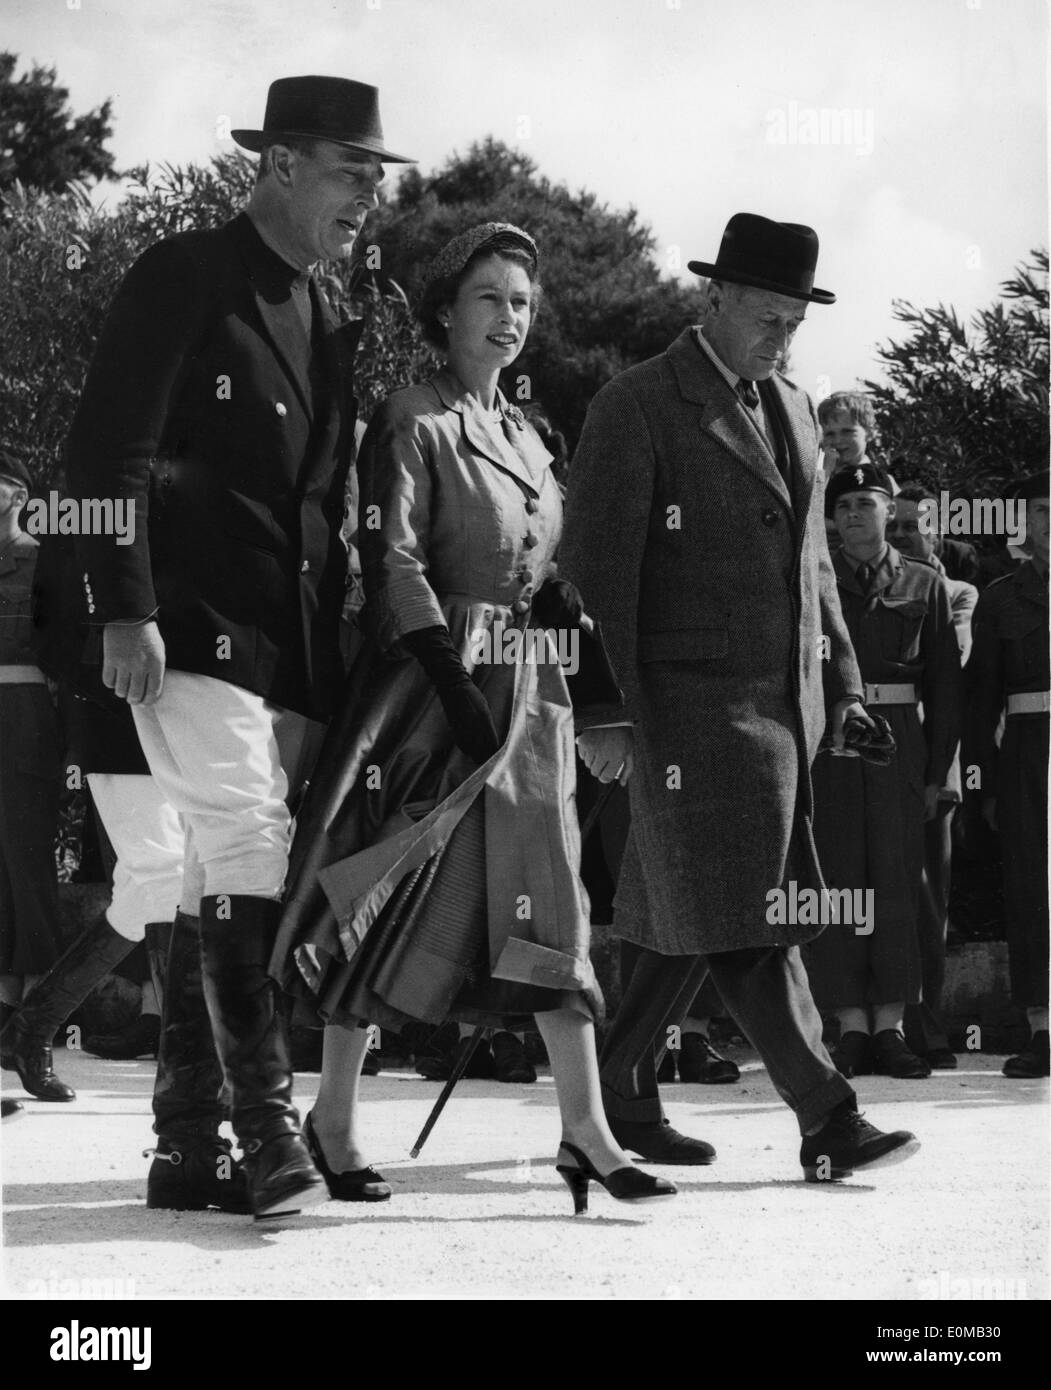 6 mai 1954 - Malte - LA REINE ELIZABETH II ET LE COMTE MOUNTBATTEN arrivent à la Marsa polo sol pour regarder le Prince Philip jouer pour la Marine royale. Banque D'Images